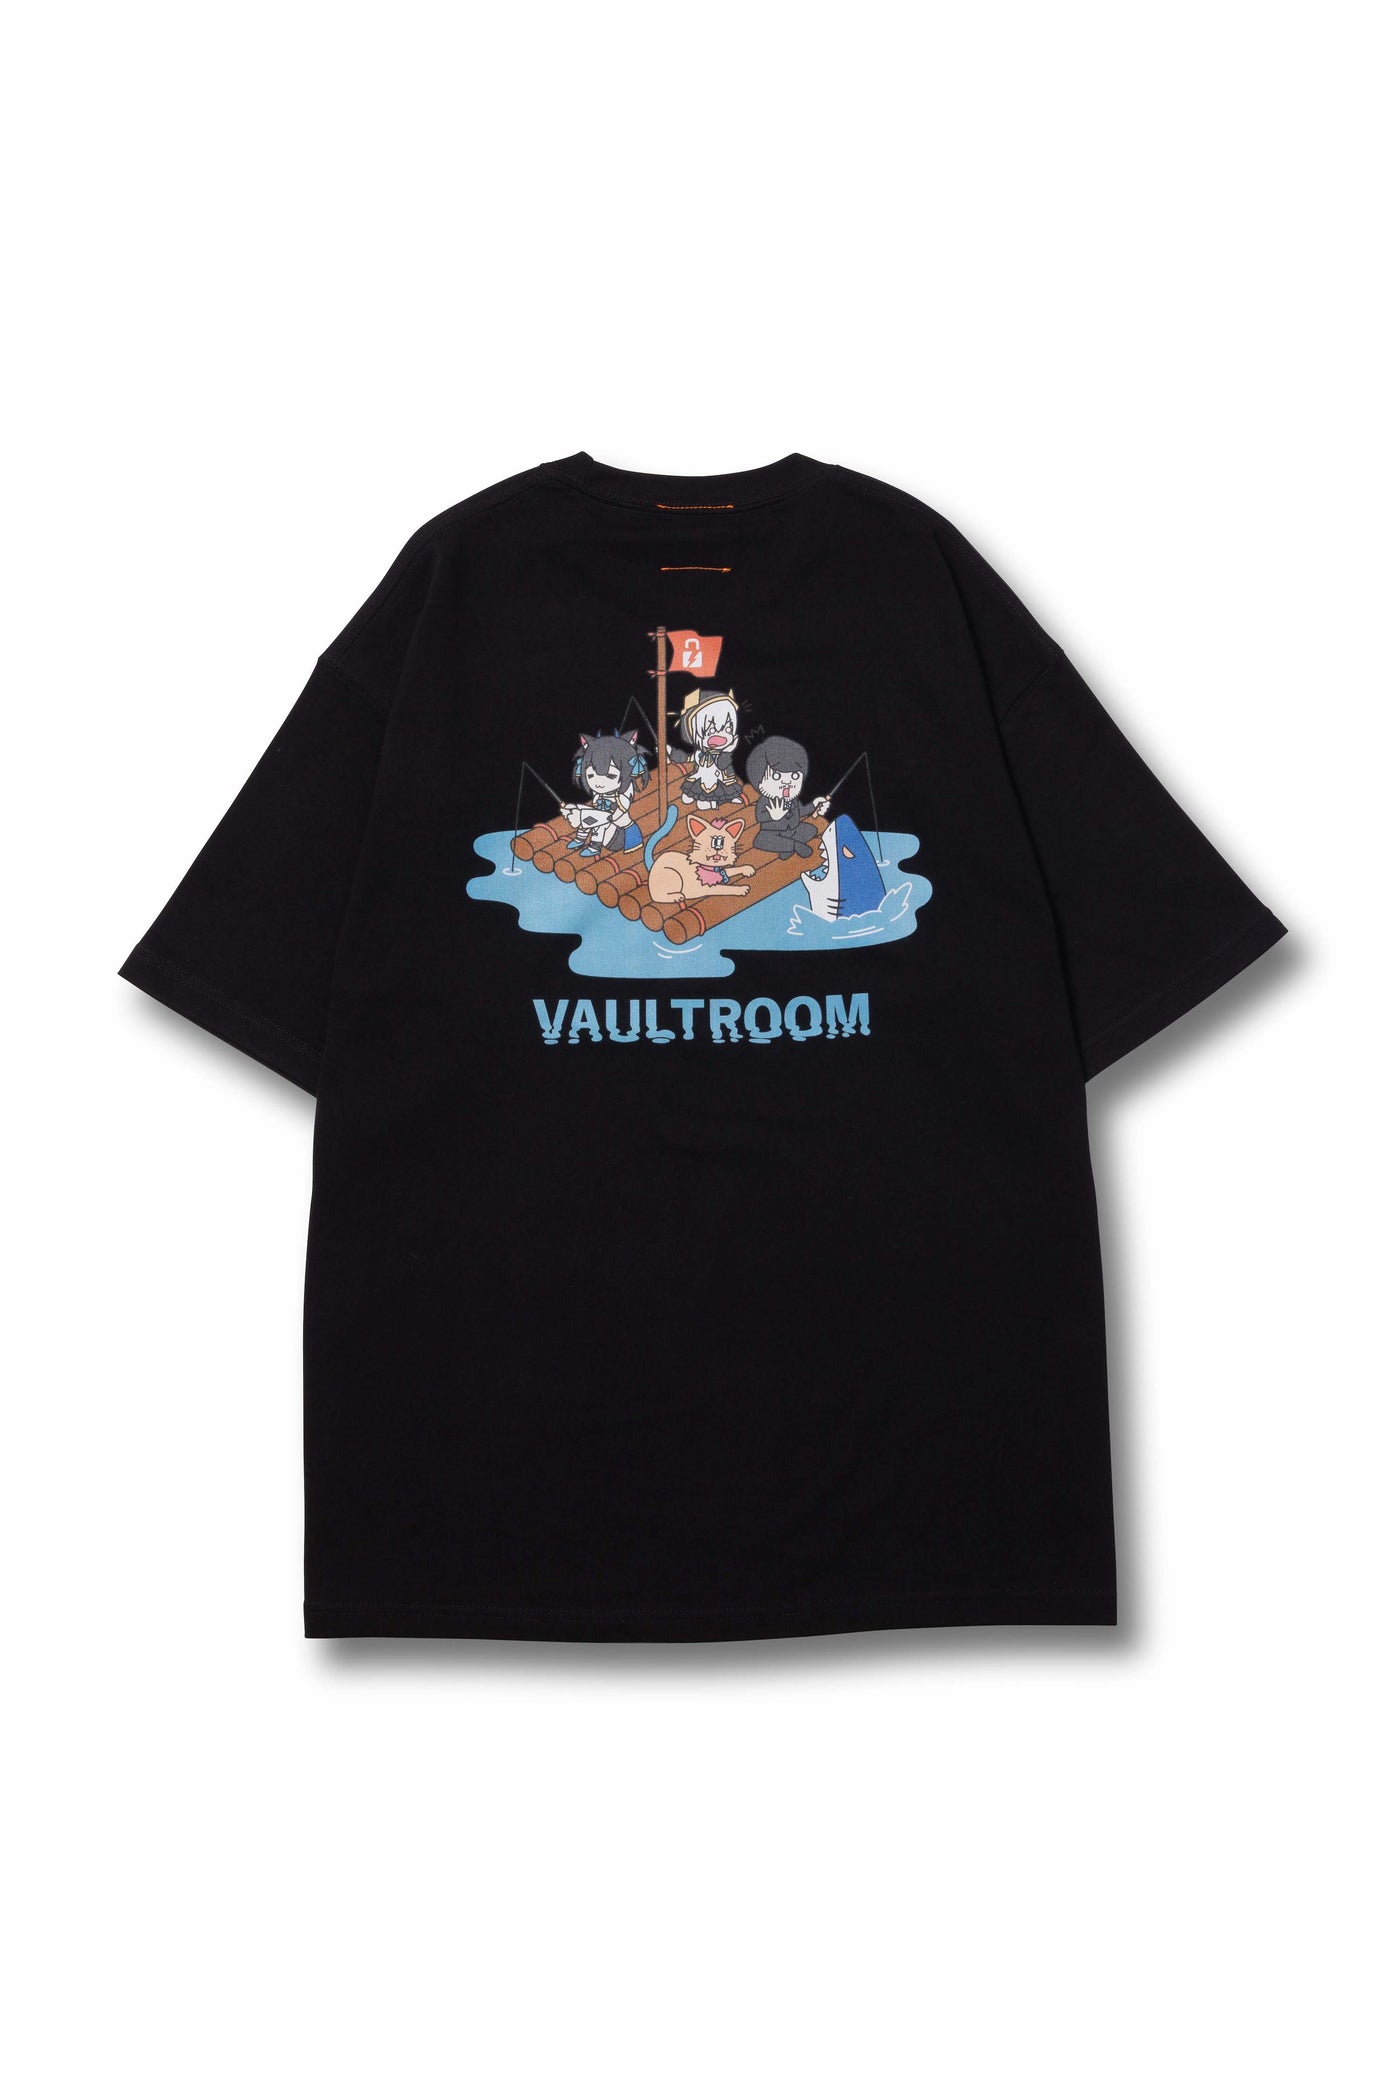 vaultroom FISHING TEE / BLK